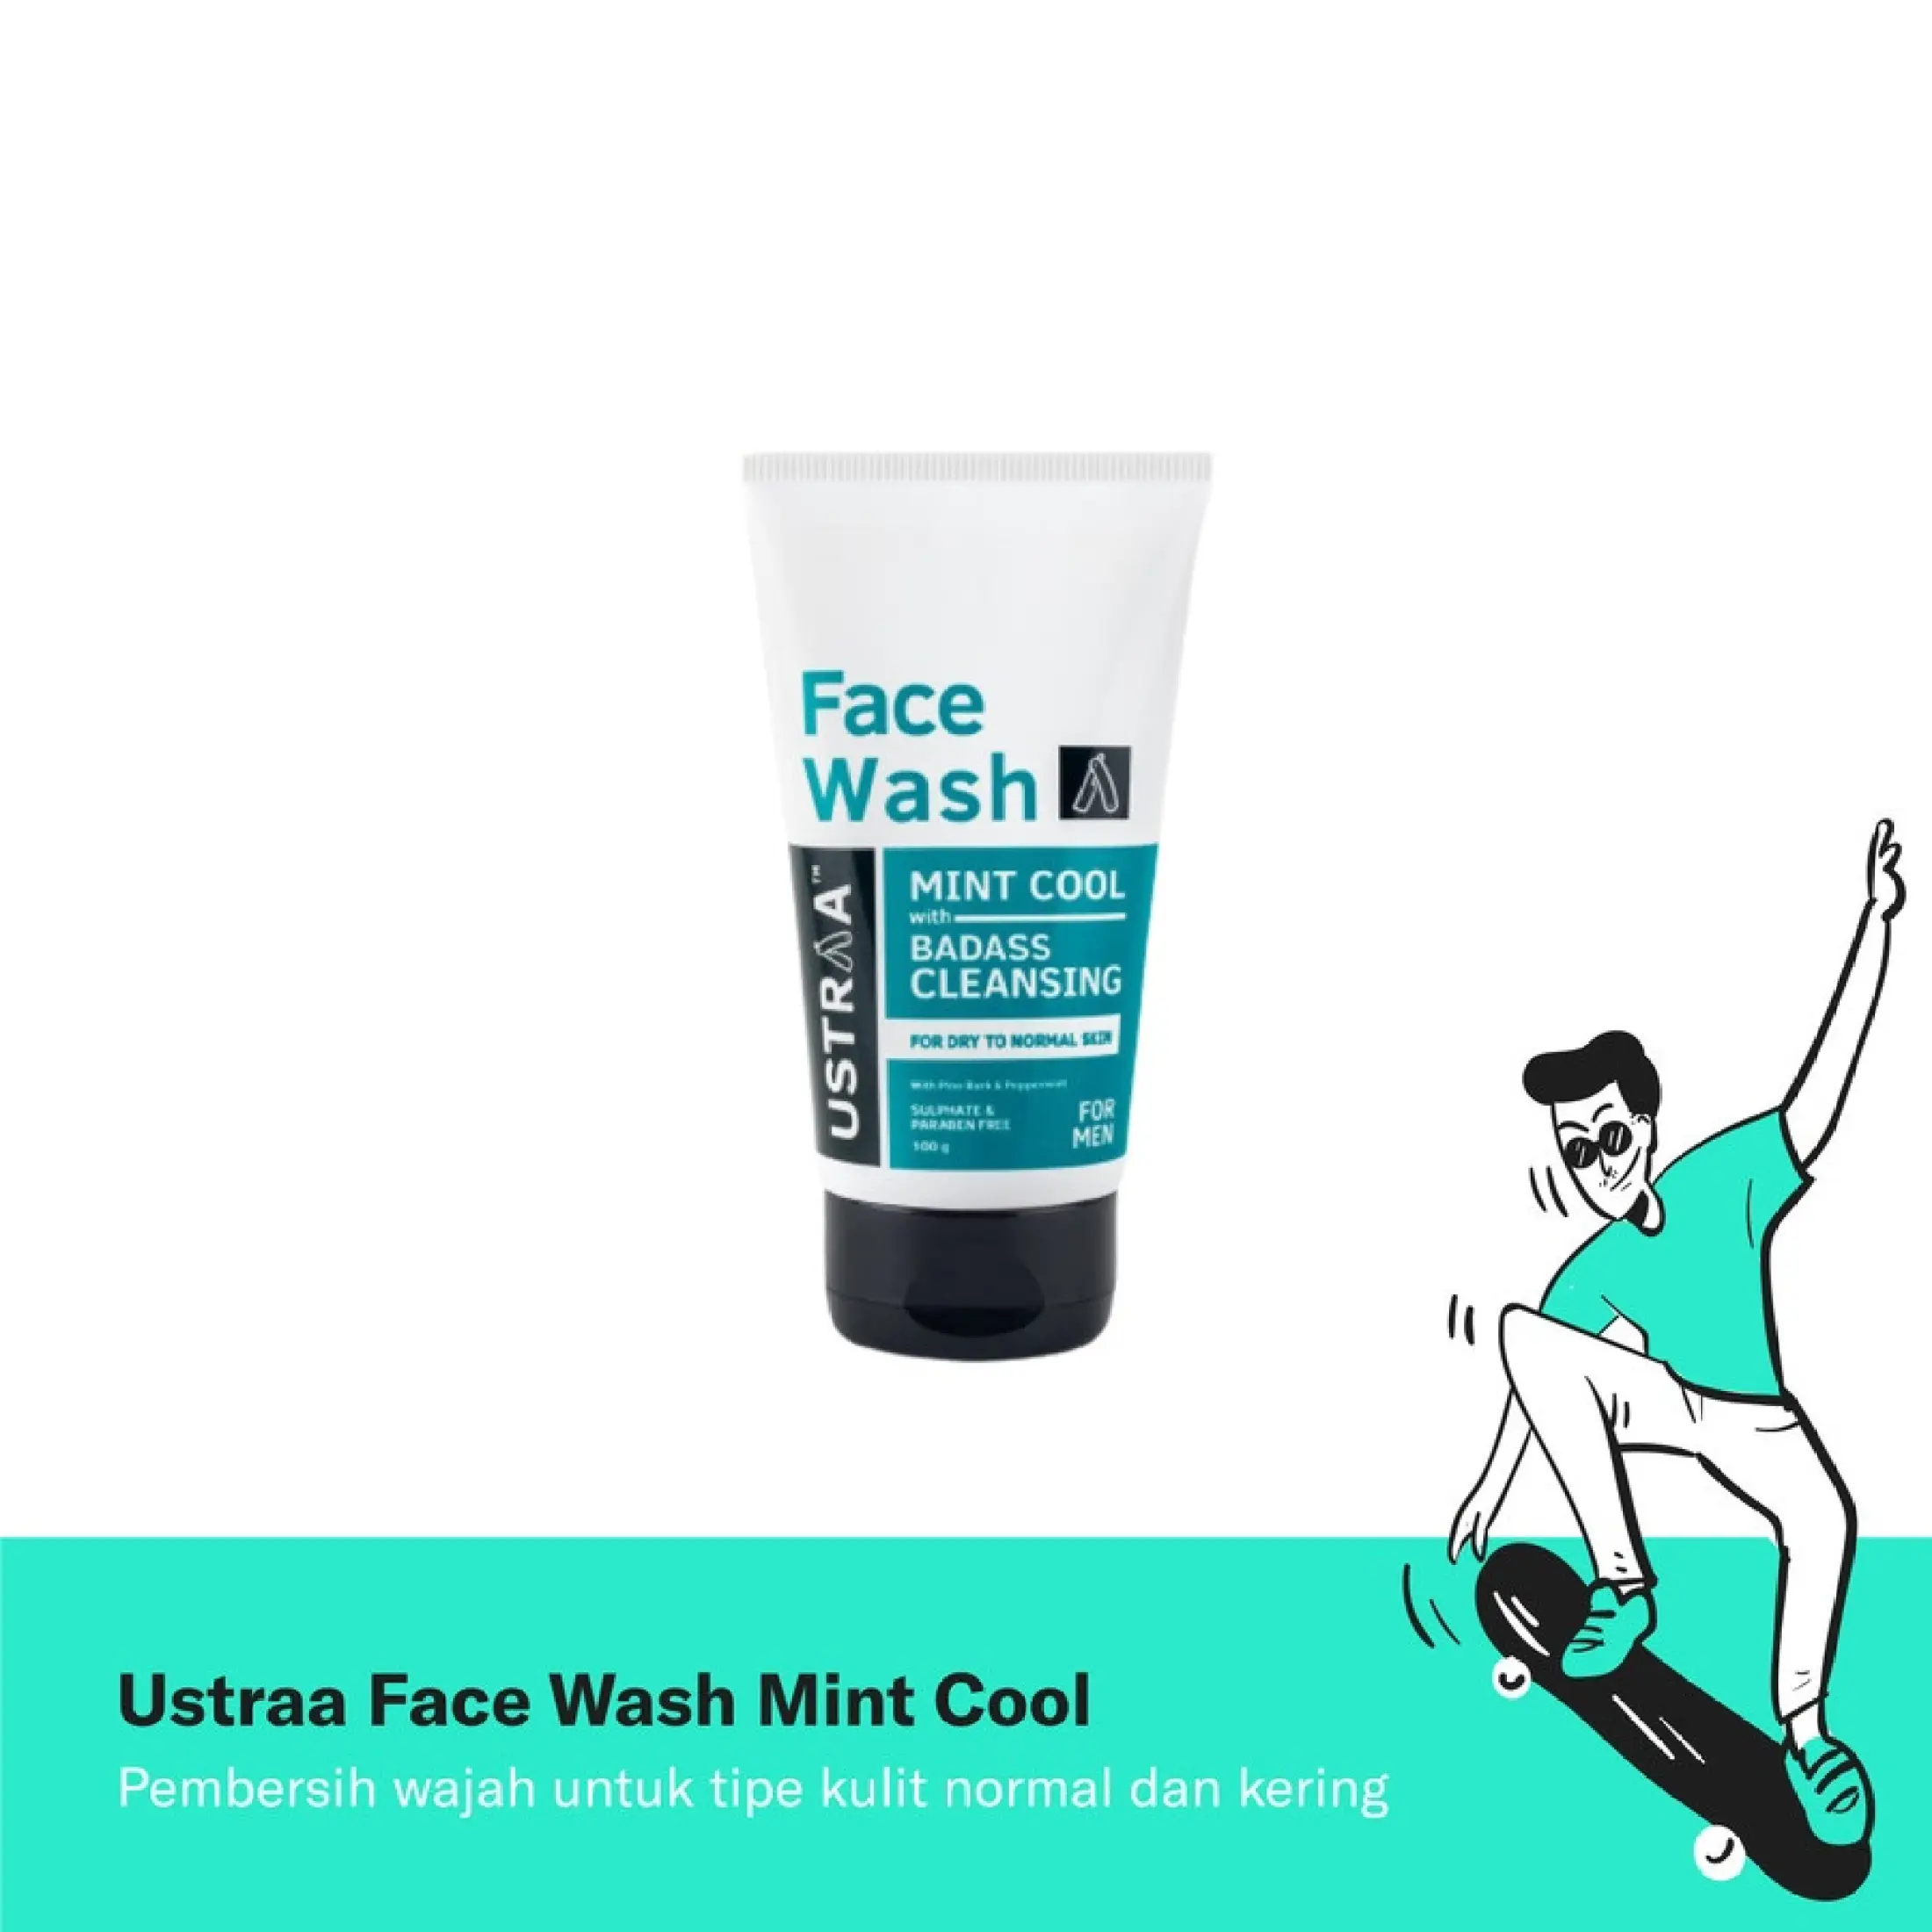 Terlaris Ustraa Face Wash Dry Skin Mint Cool With Badass Cleansing Sabun Muka Penghilang Jerawat Pria Penghilang Komedo Sabun Cuci Muka Pria Sabun Pembersih Wajah Pria Menyegarkan Berkualitas Lazada Indonesia